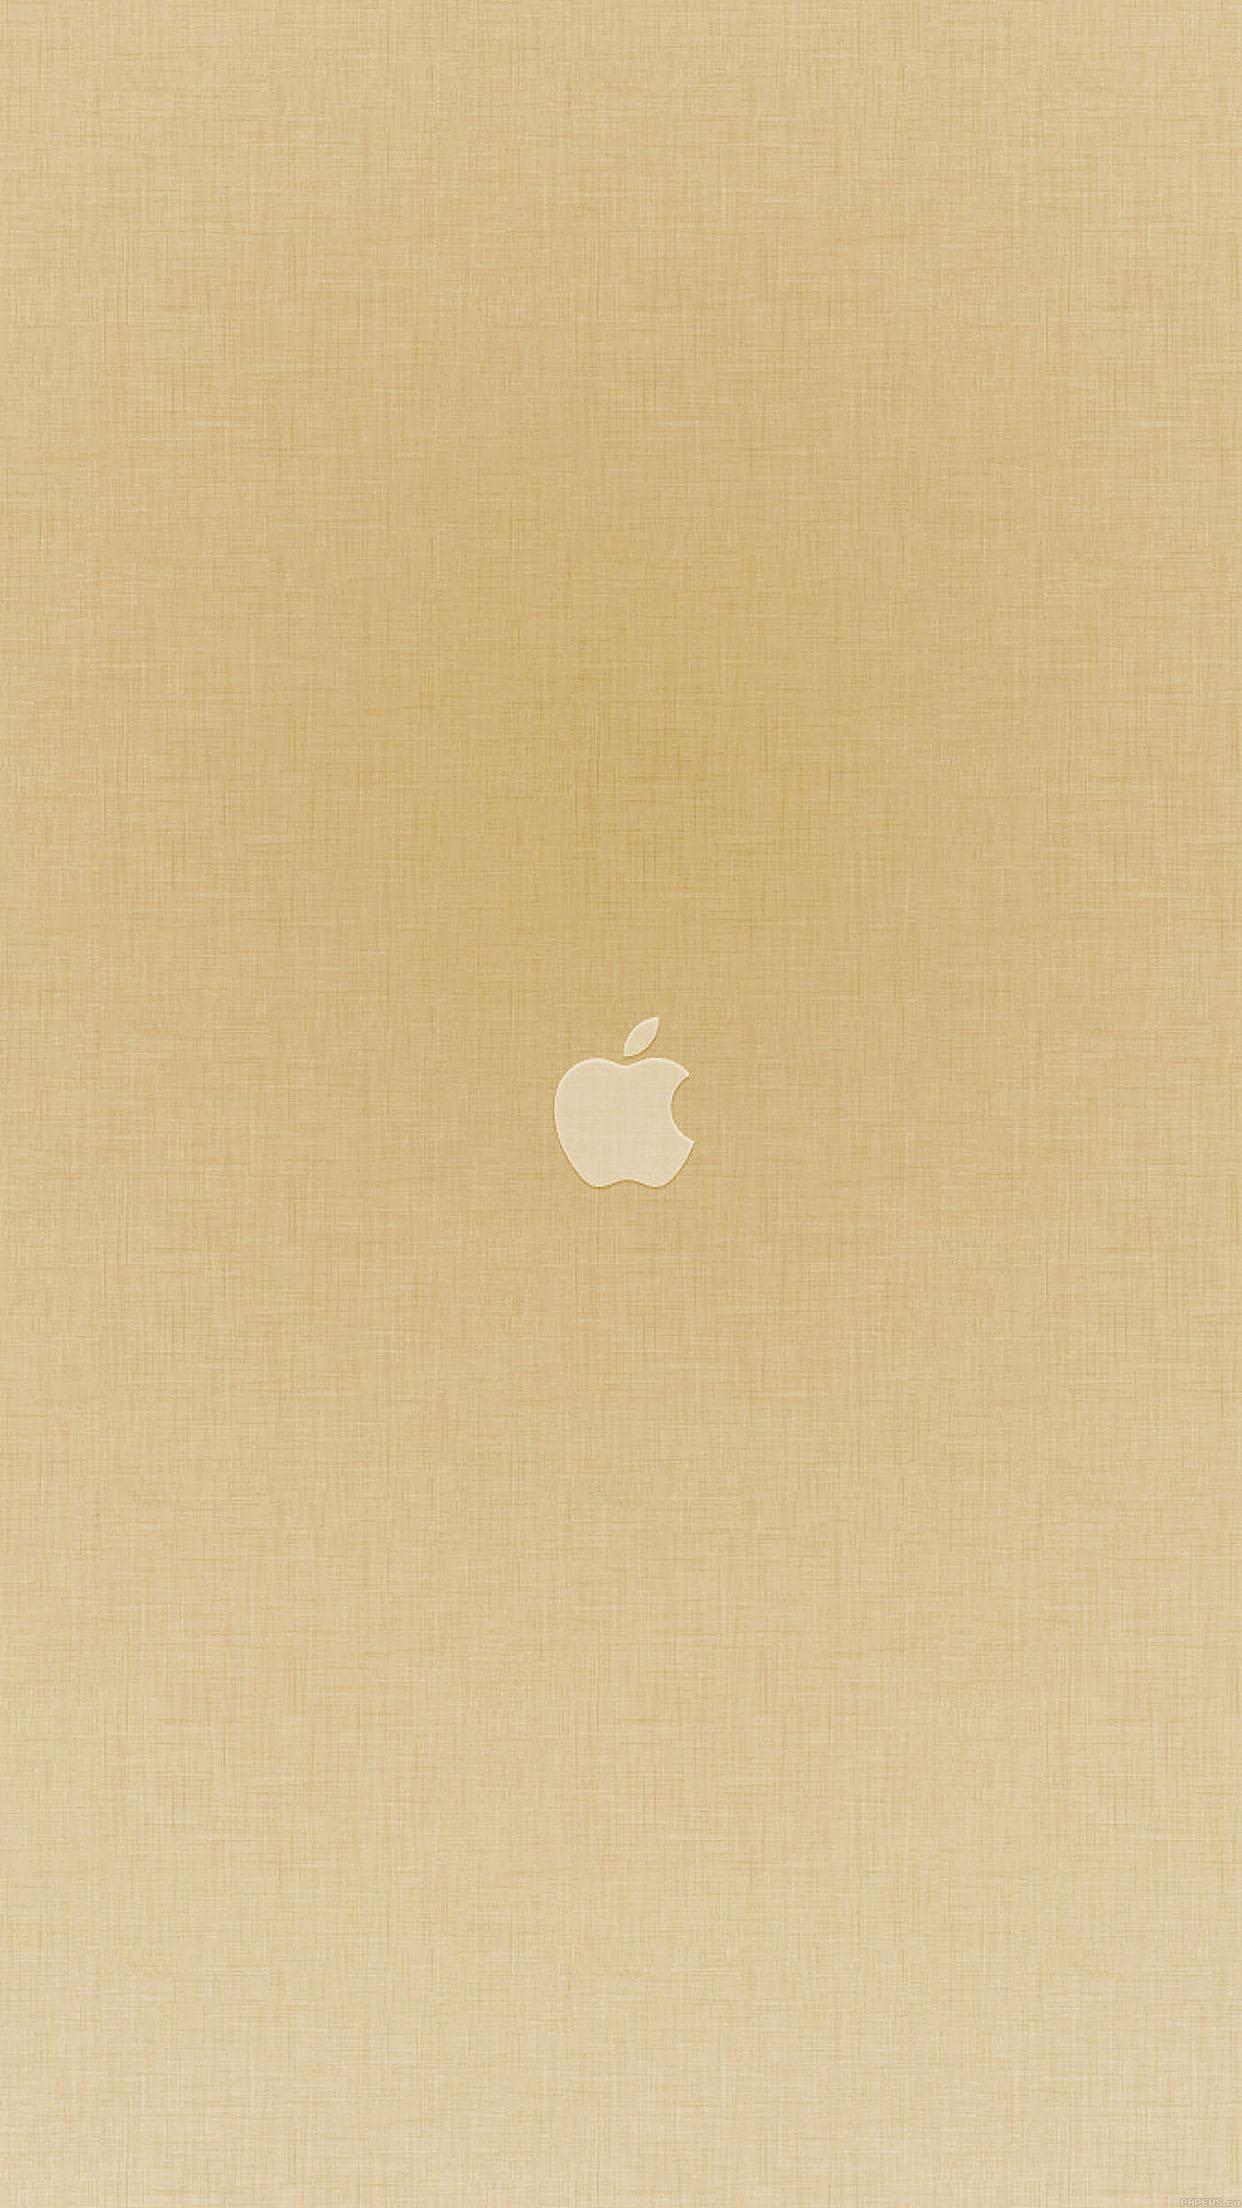 Wallpaper Weekends: Gold iPhone Wallpaper